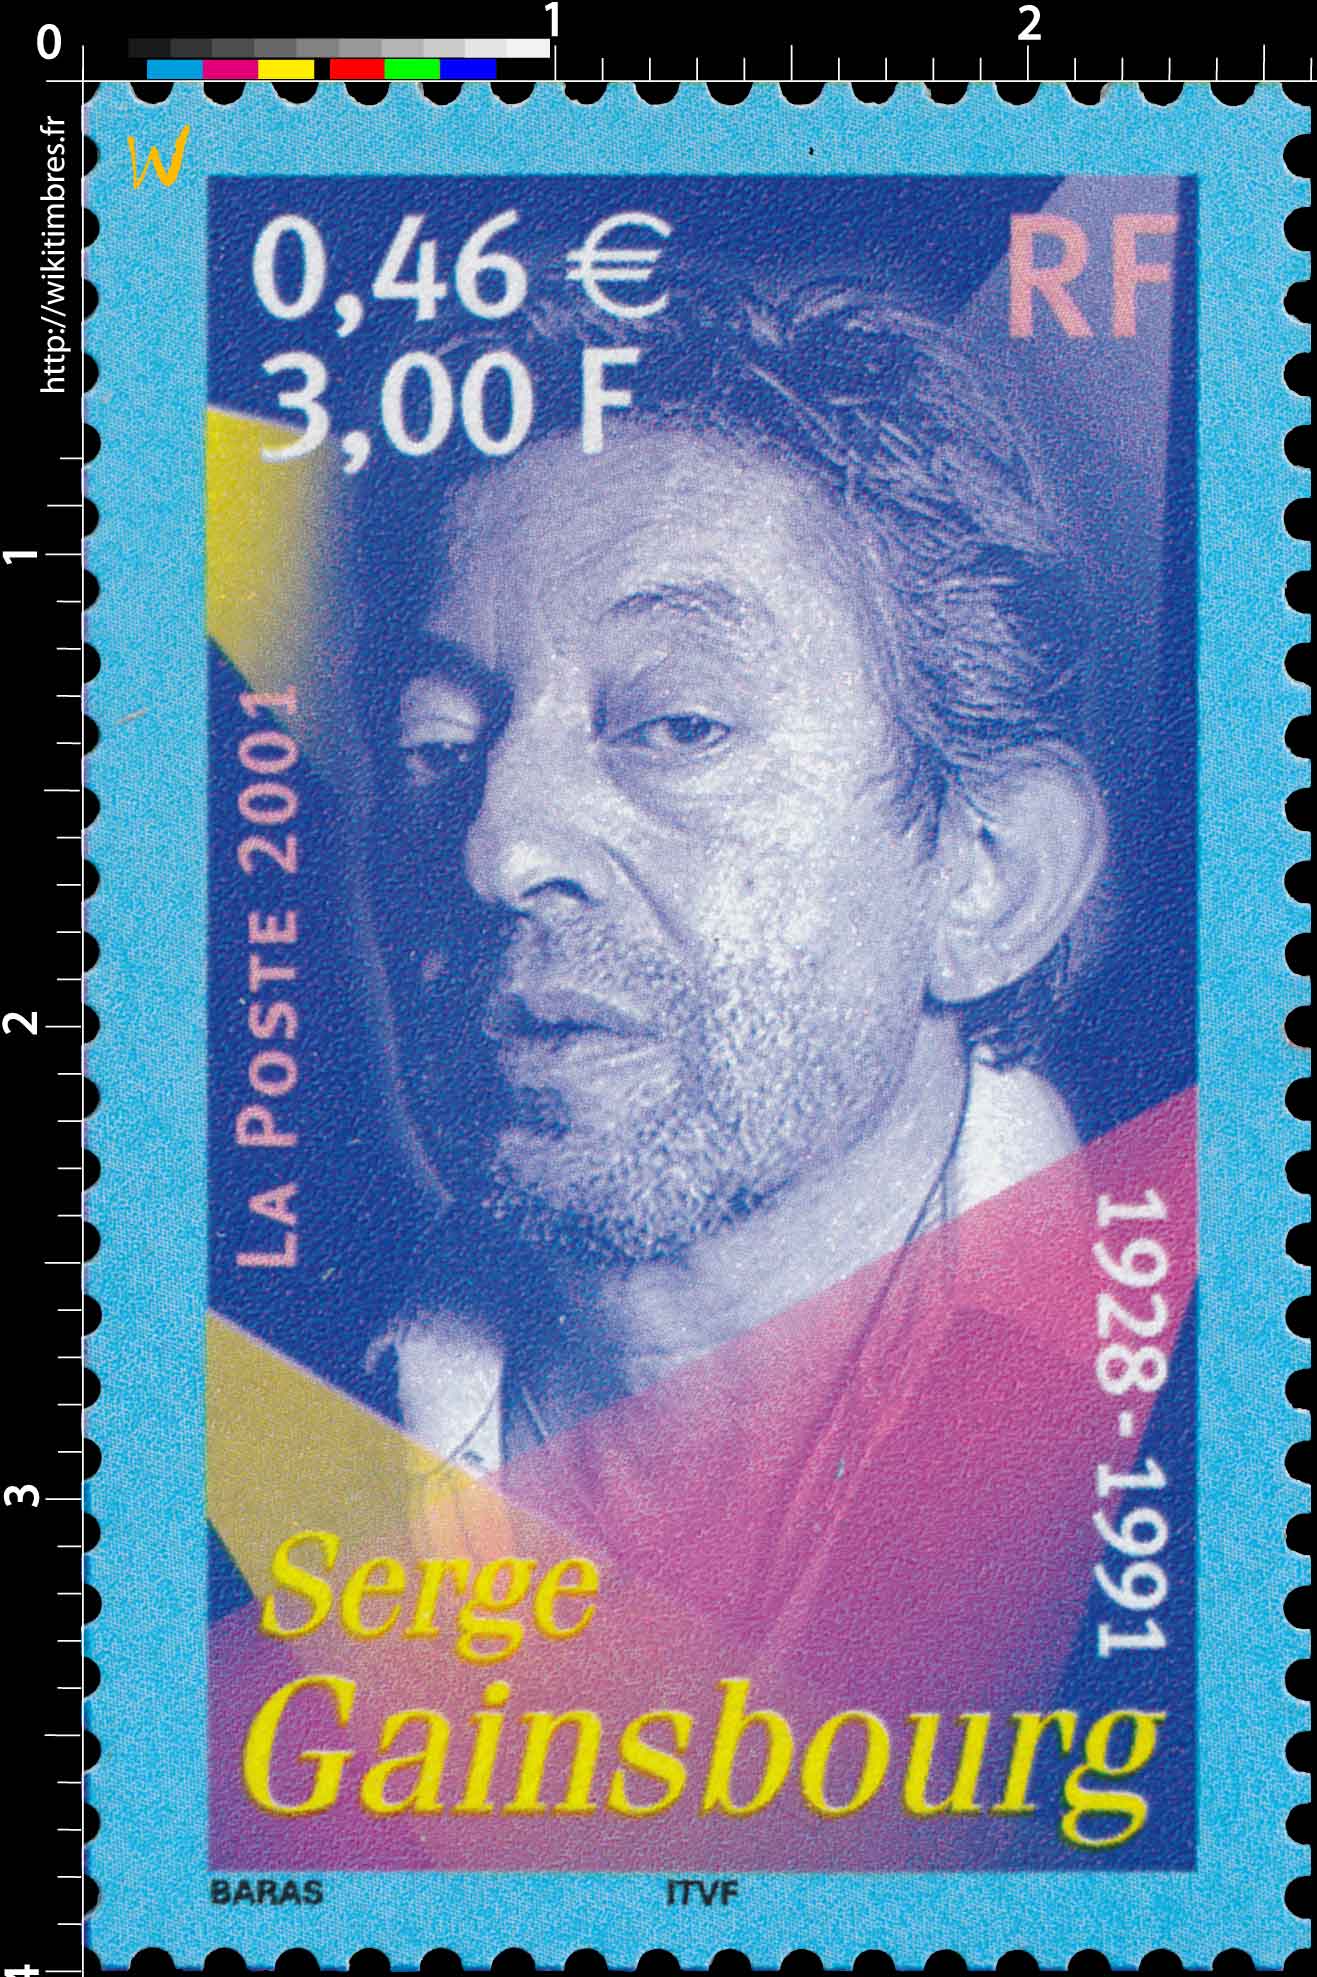 2001 Serge Gainsbourg 1928-1991